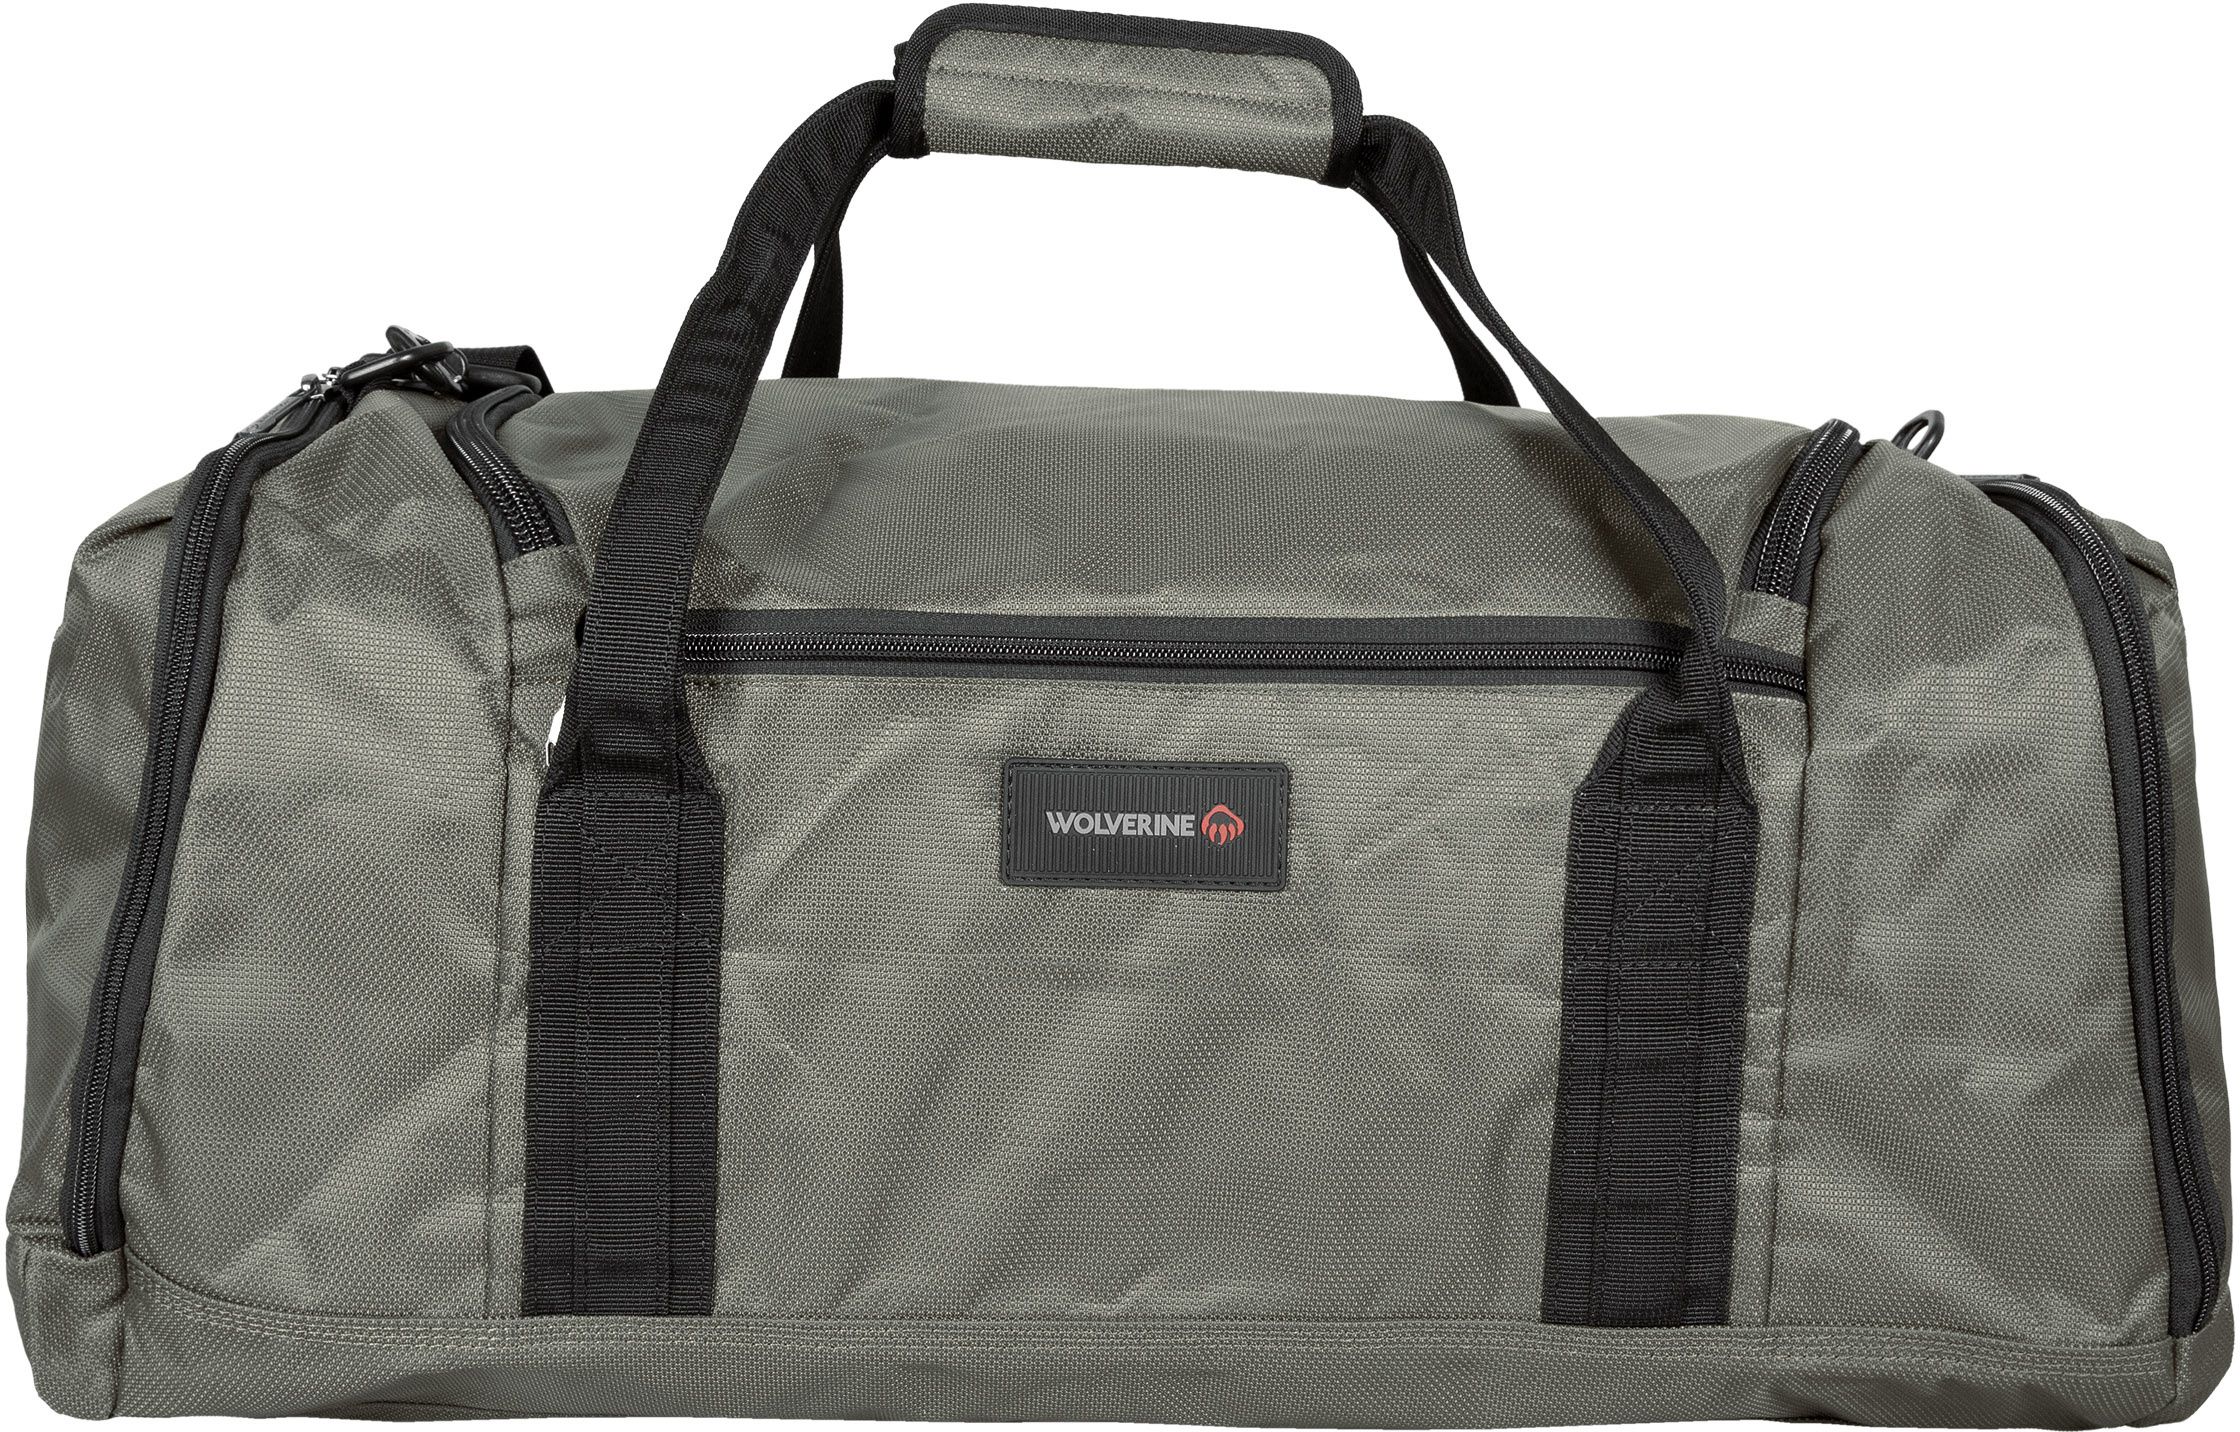 26-дюймовая спортивная сумка с багажным отделением Wolverine